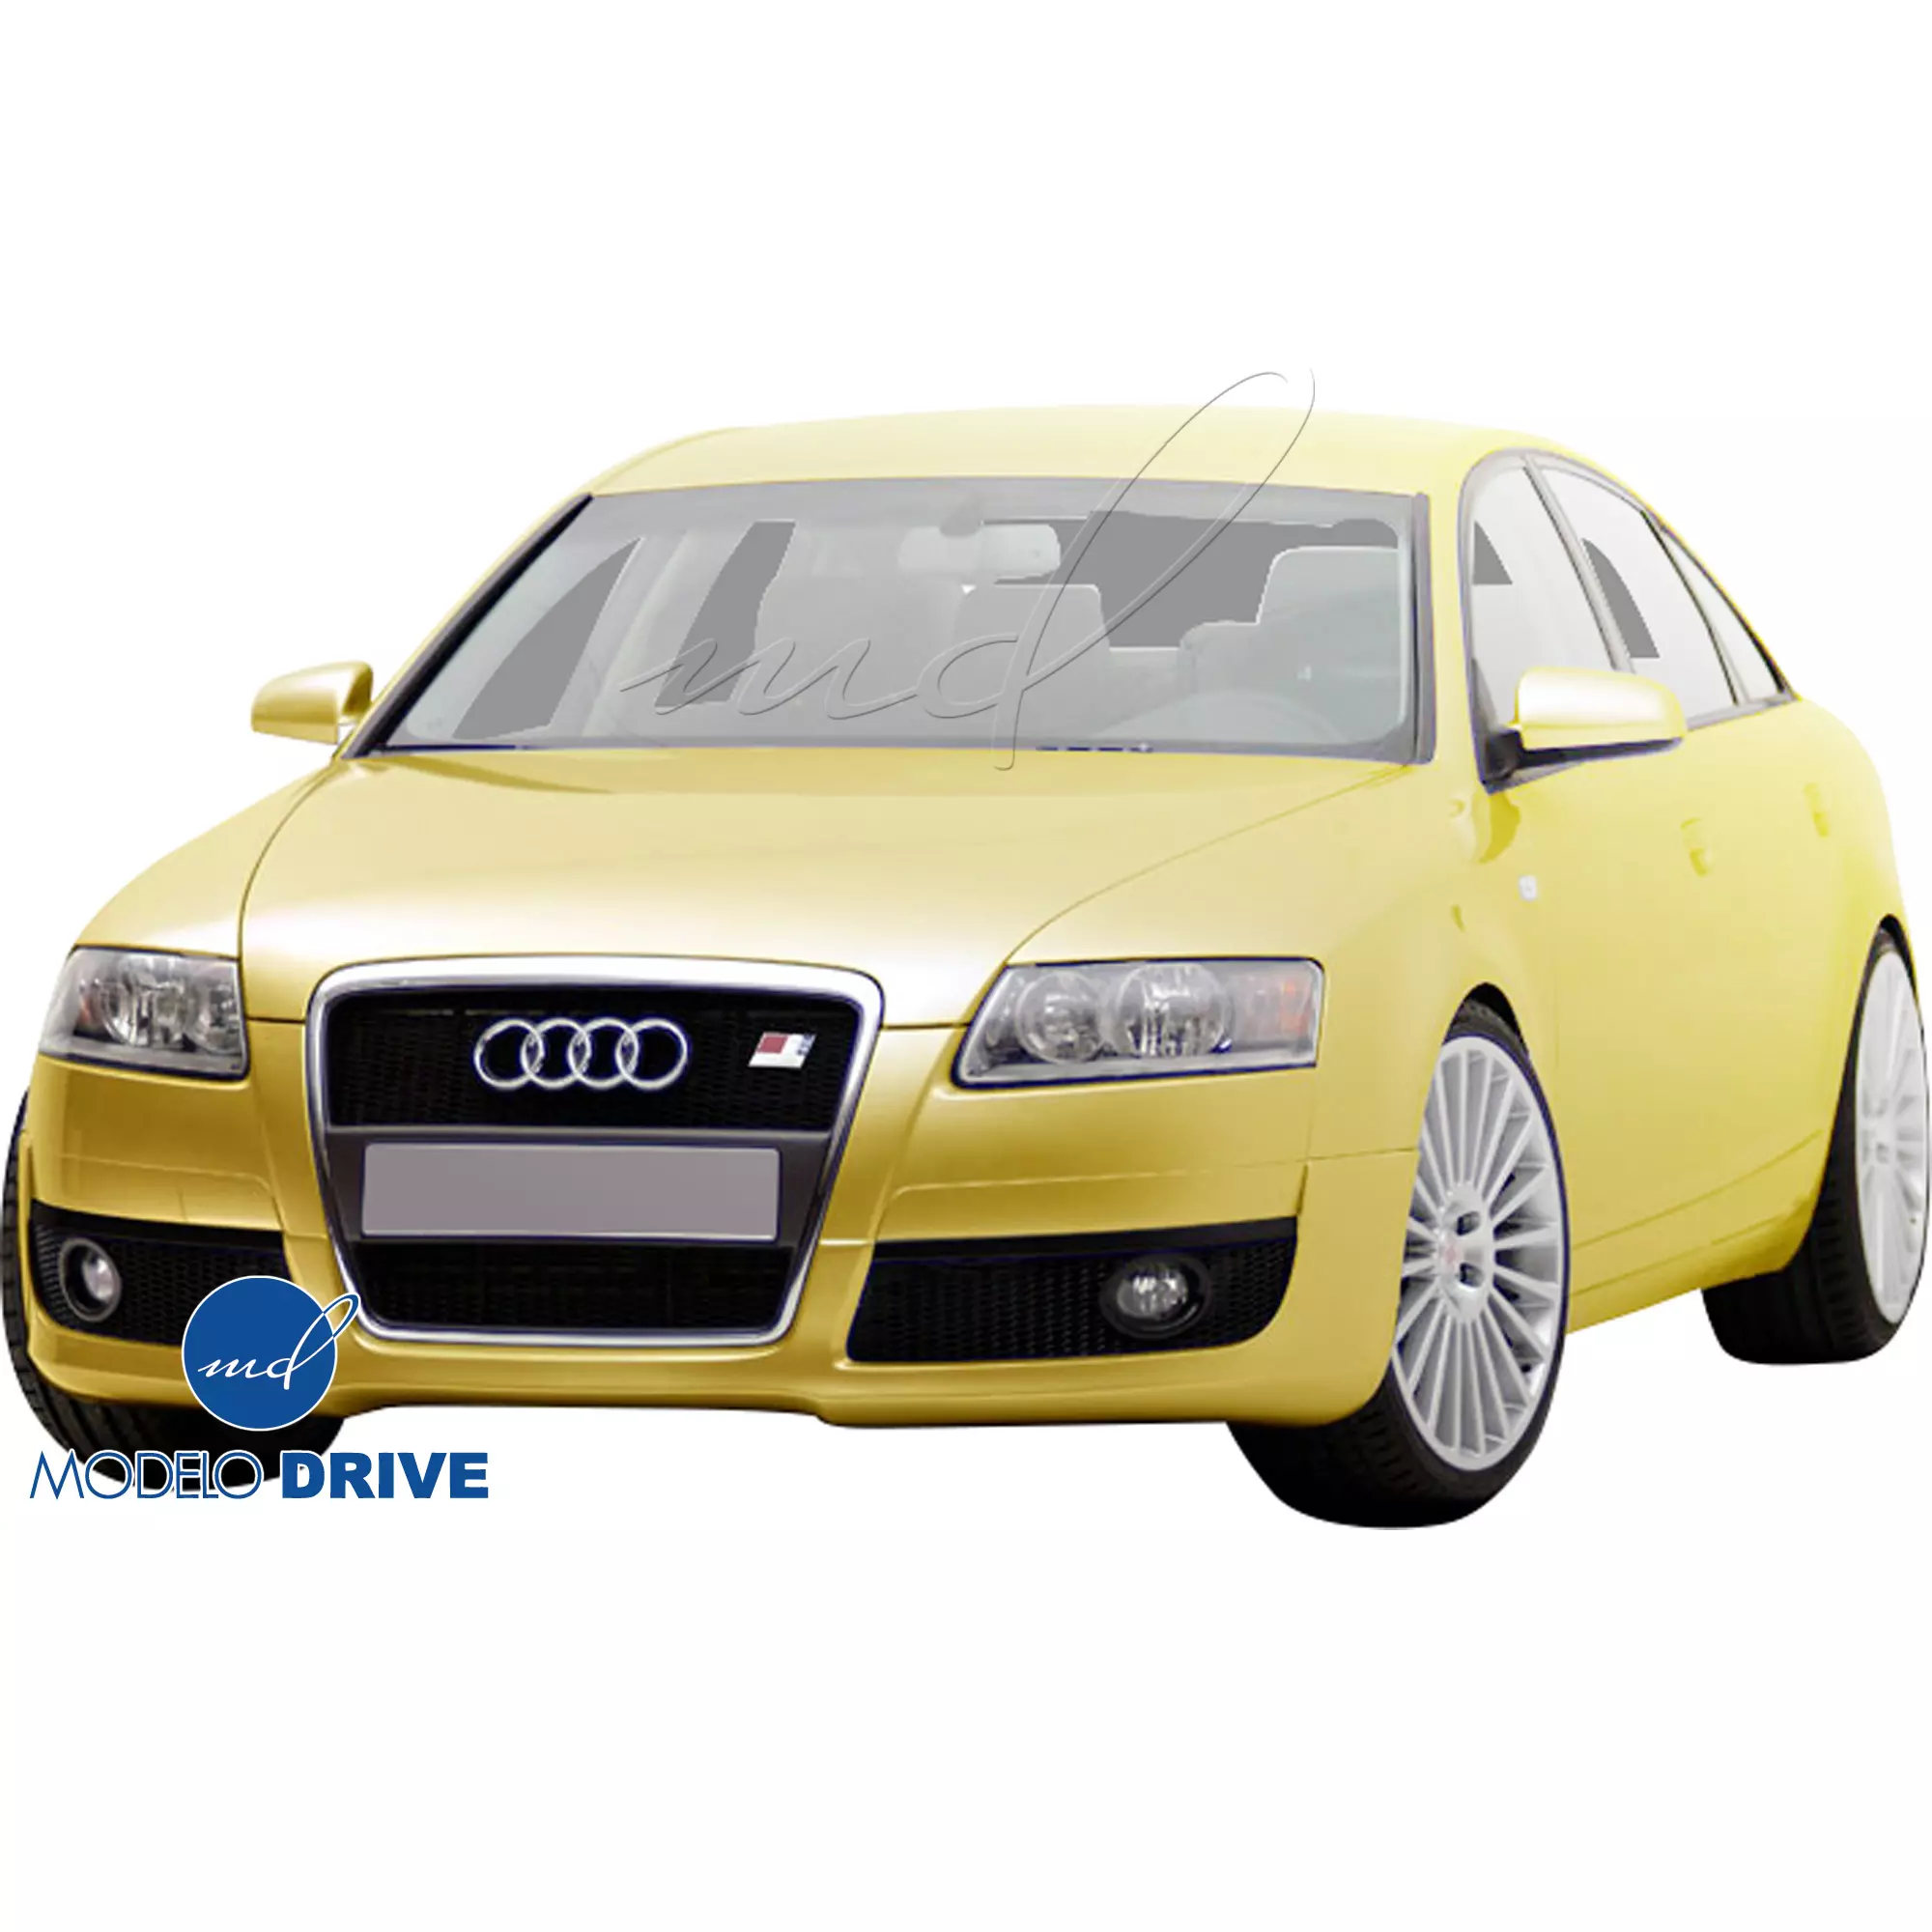 ModeloDrive FRP CE Front Lip Valance > Audi A6 C6 2008-2012 - Image 4